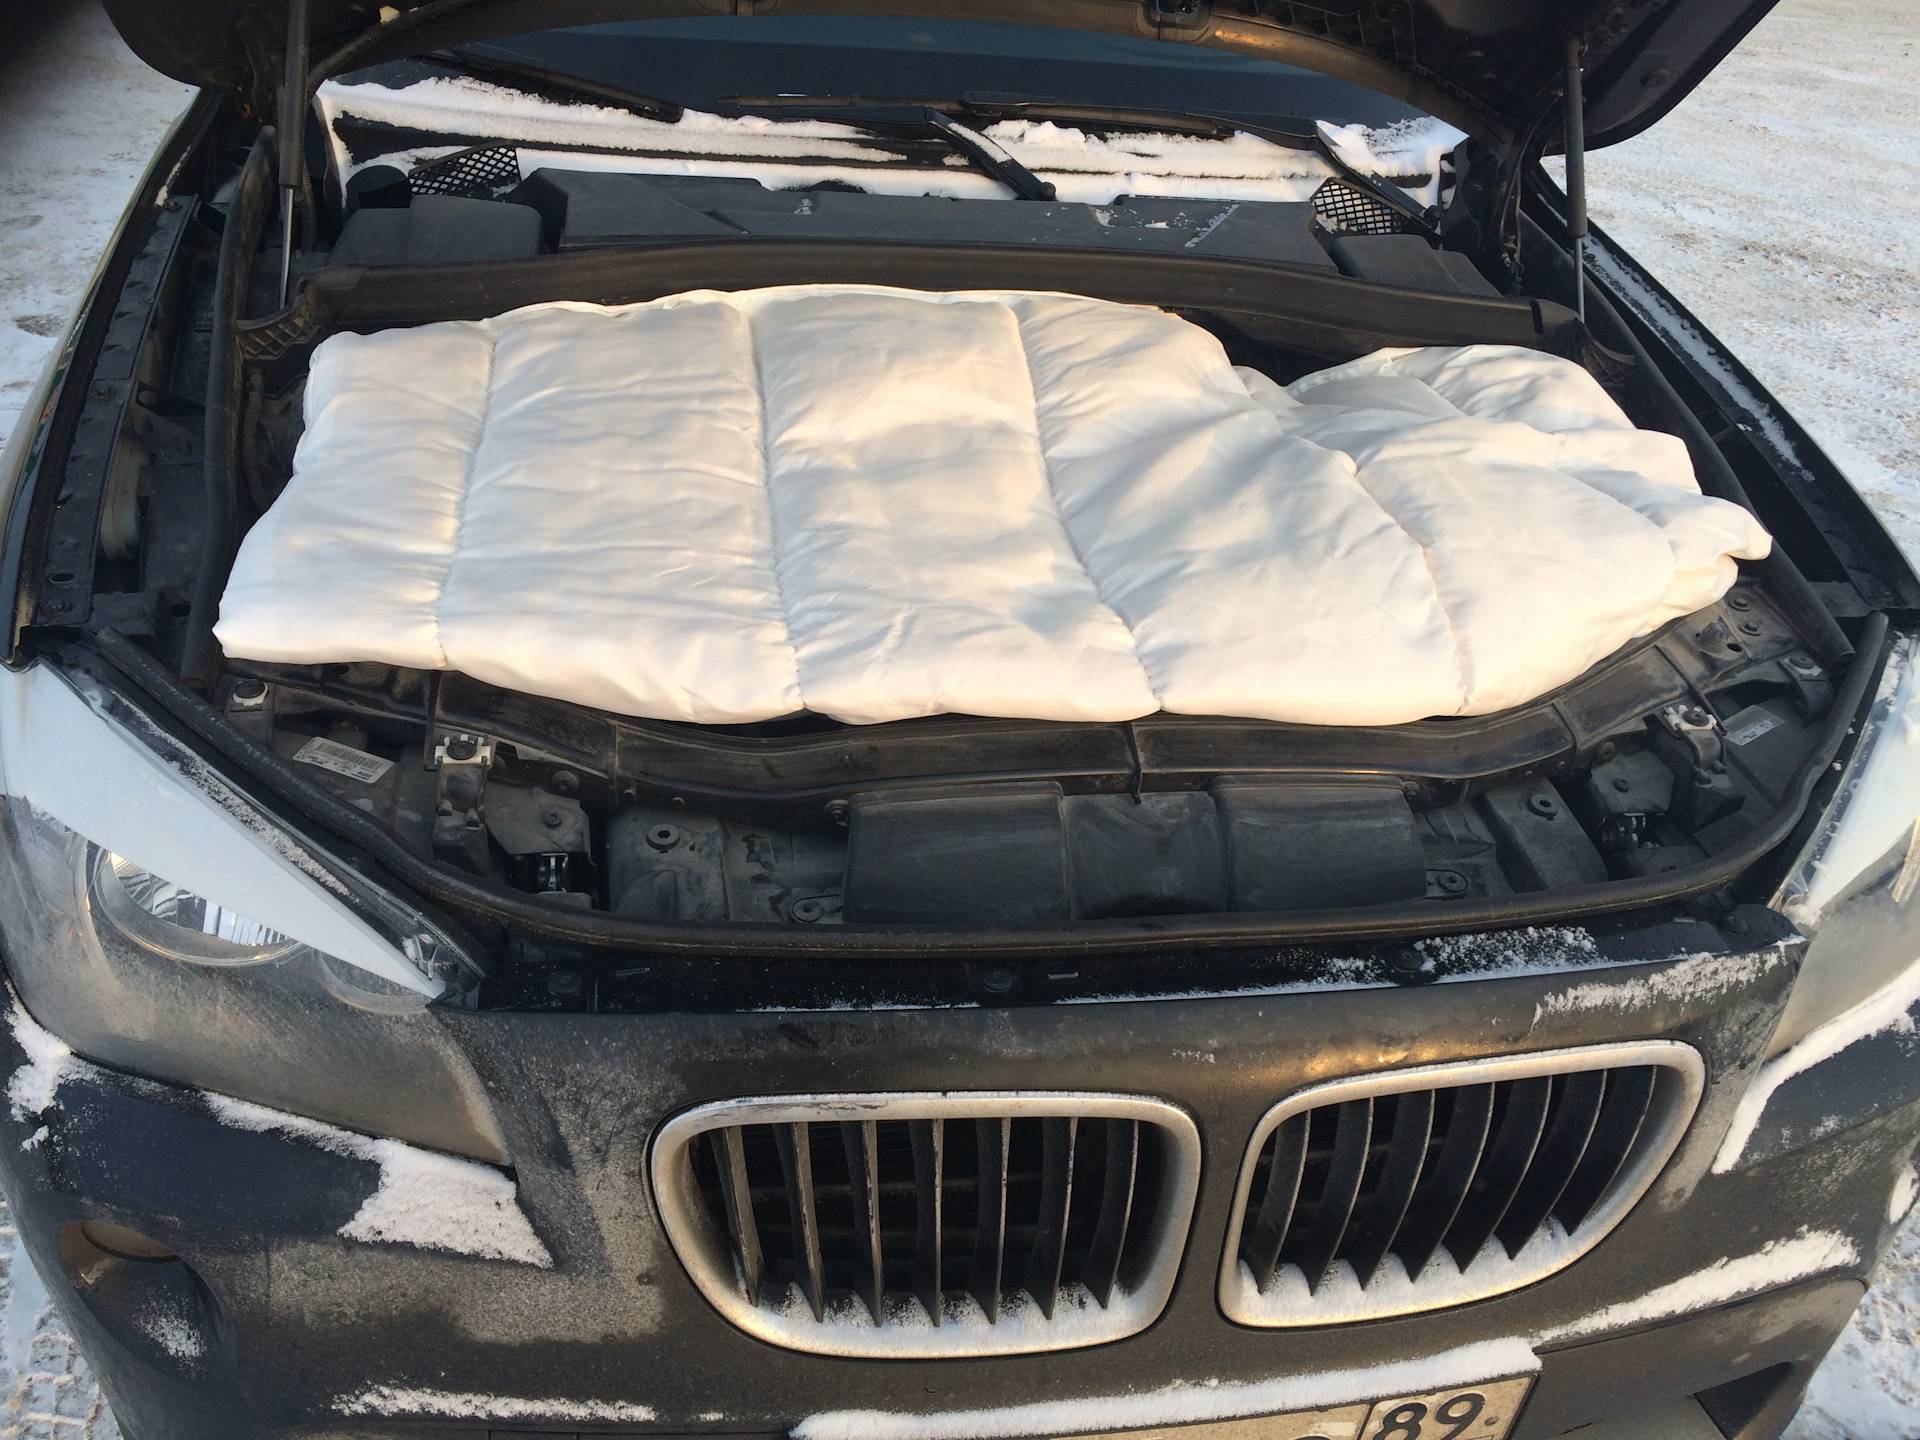 Автомобильное одеяло для двигателя: нужно ли, как правильно выбрать состав и размеры термоодеяла под капот автомобиля (фото, видео и отзывы)